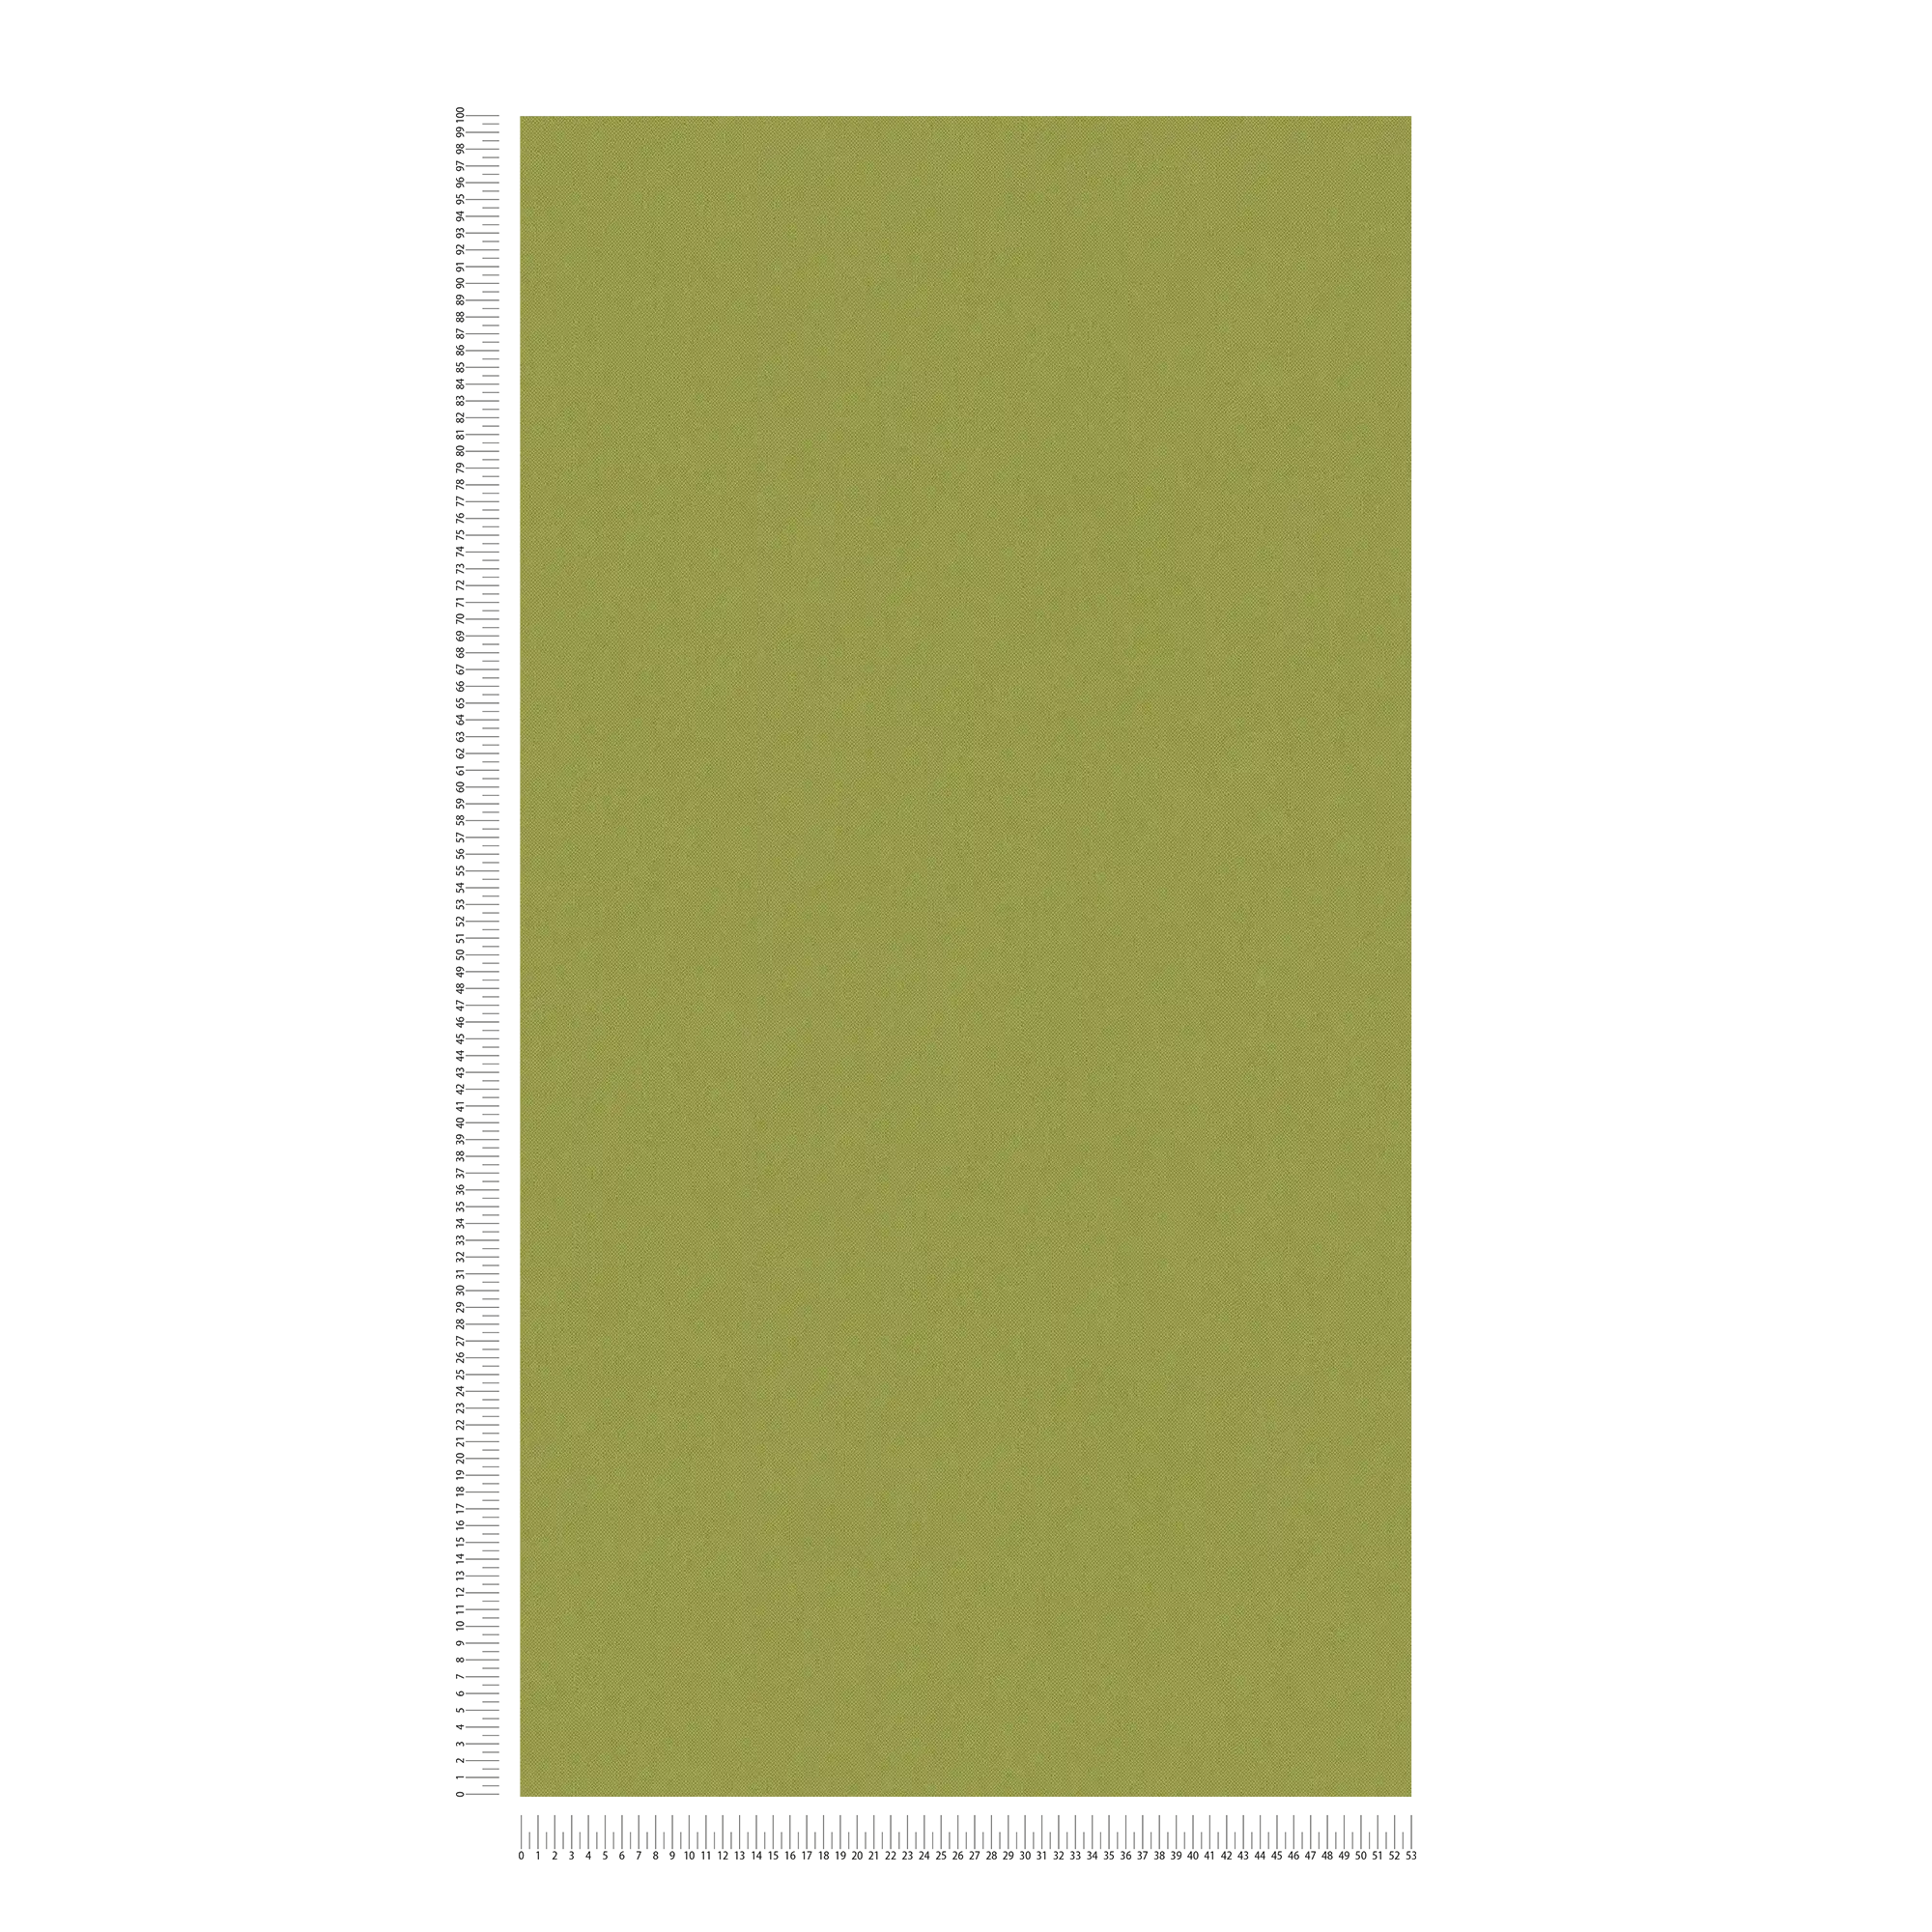             Olijfgroen behang met linnenlook & structuurpatroon - groen, geel
        